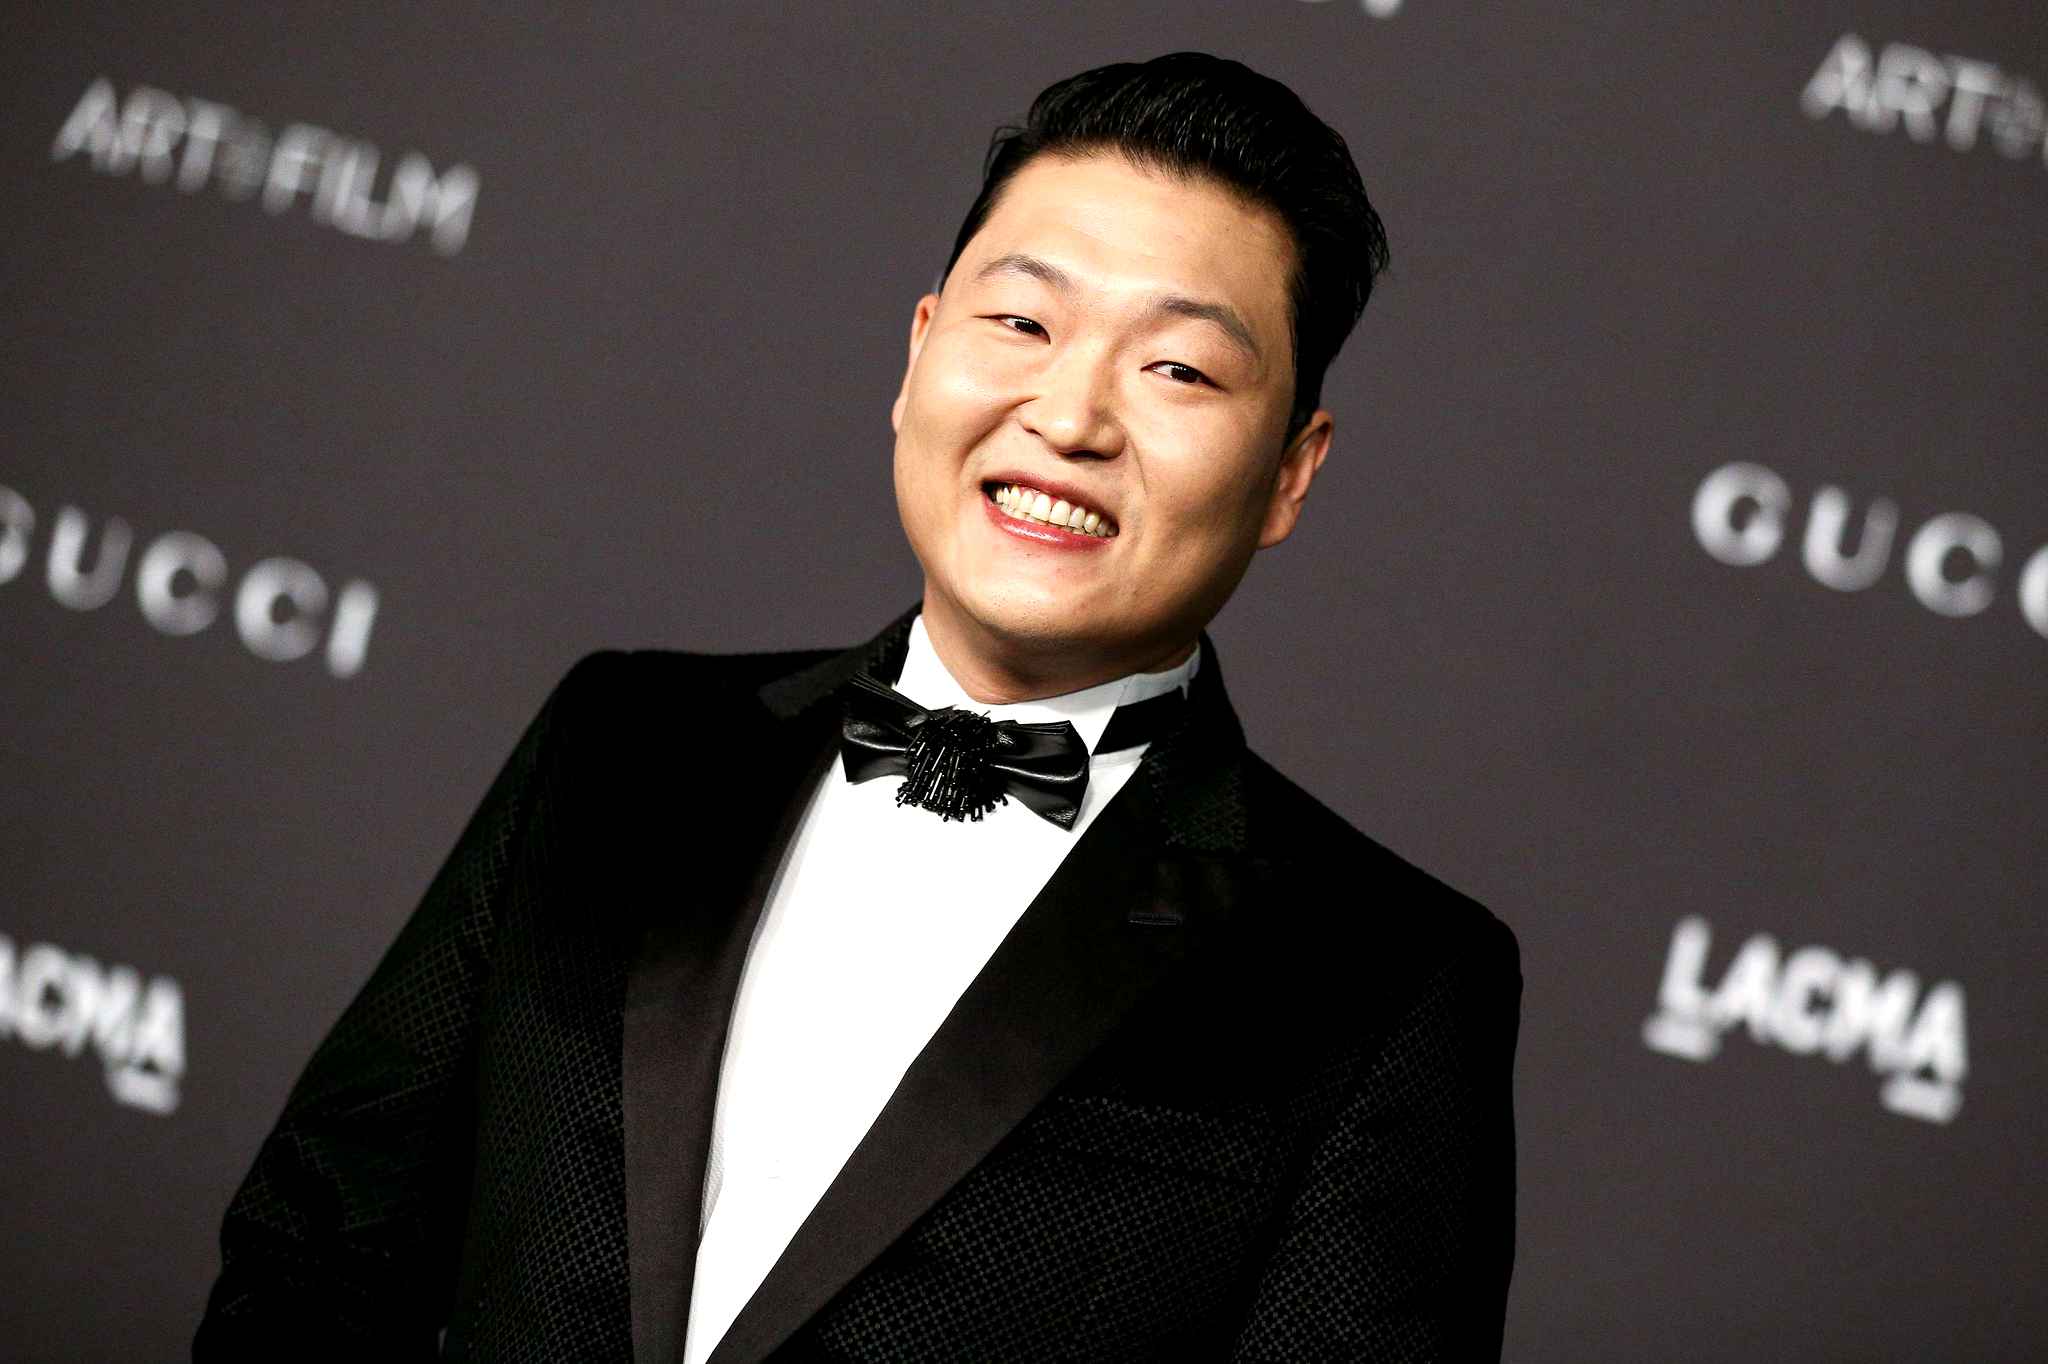 Le chanteur Psy entendu par la police... dans une affaire de prostitution